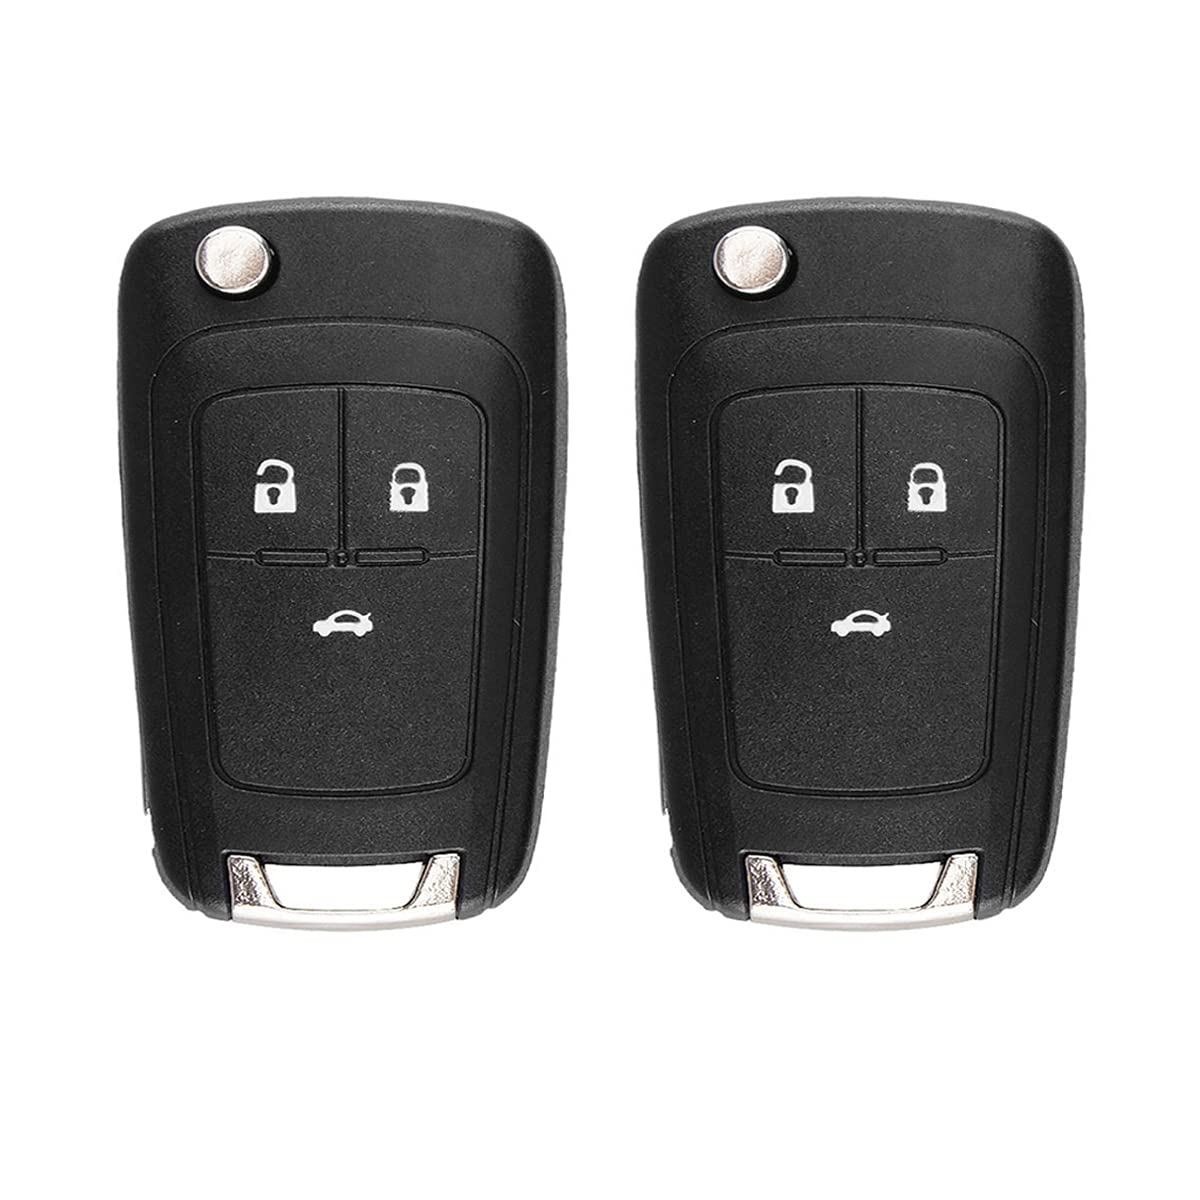 2 x 3-Tasten-Funkschlüssel-Gehäuse für Ch-evrolet Opel Astra Insignia (3 Tasten) von Etomvoop